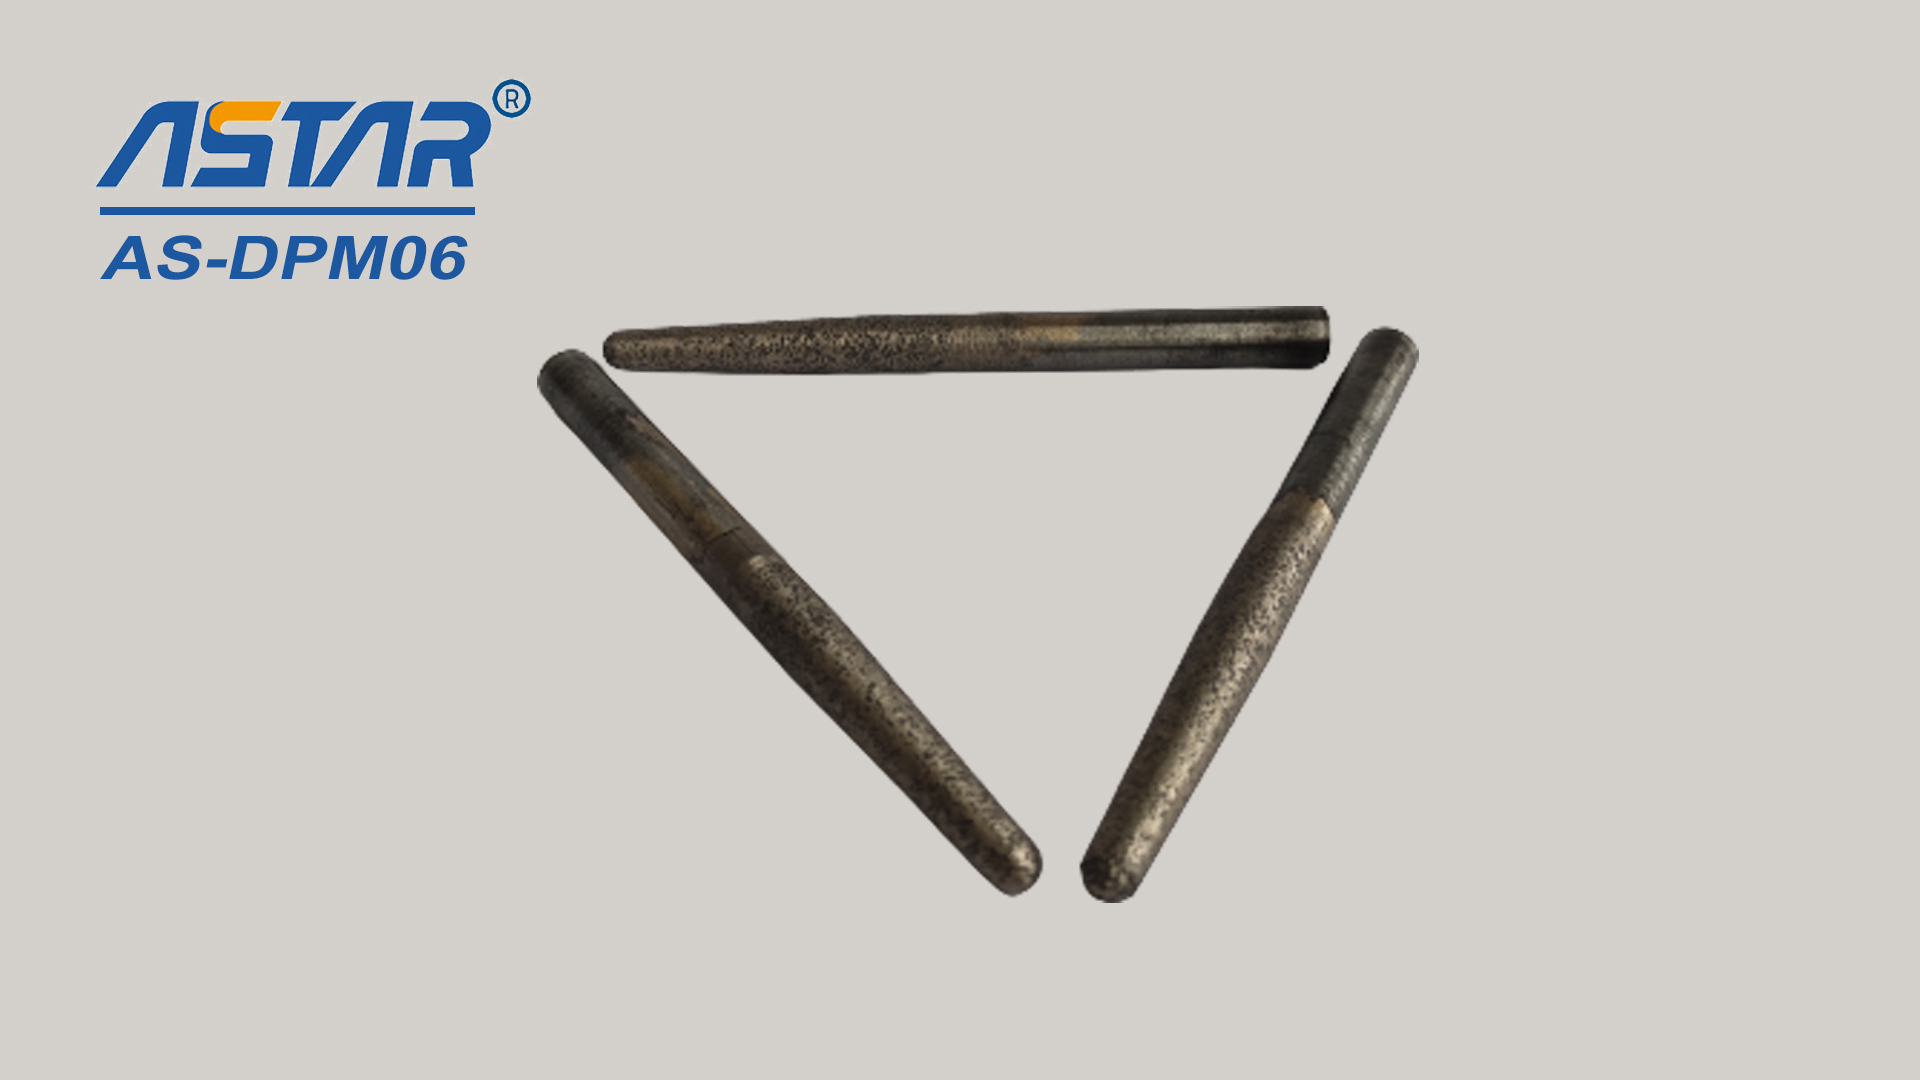 Elmas metal konik uçlar, 6 mm ila 12 mm çapında küçük alanları, delikleri ve olukları taşlamak ve cilalamak için kullanılır.